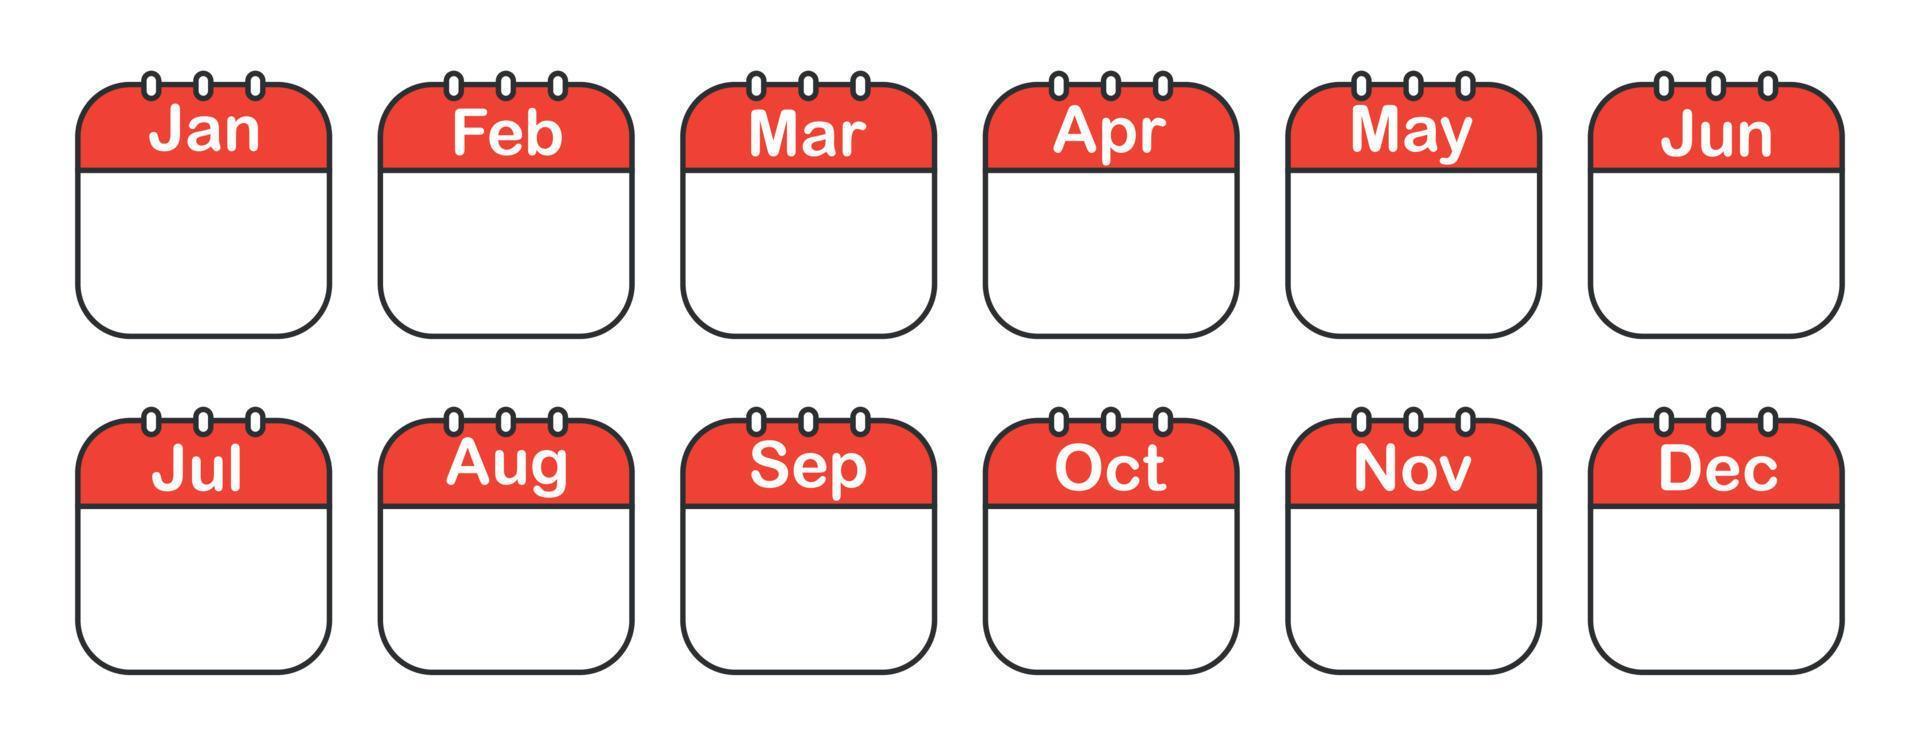 el calendario monta iconos vectoriales aislados sobre fondo blanco. horario del calendario de la semana. vector